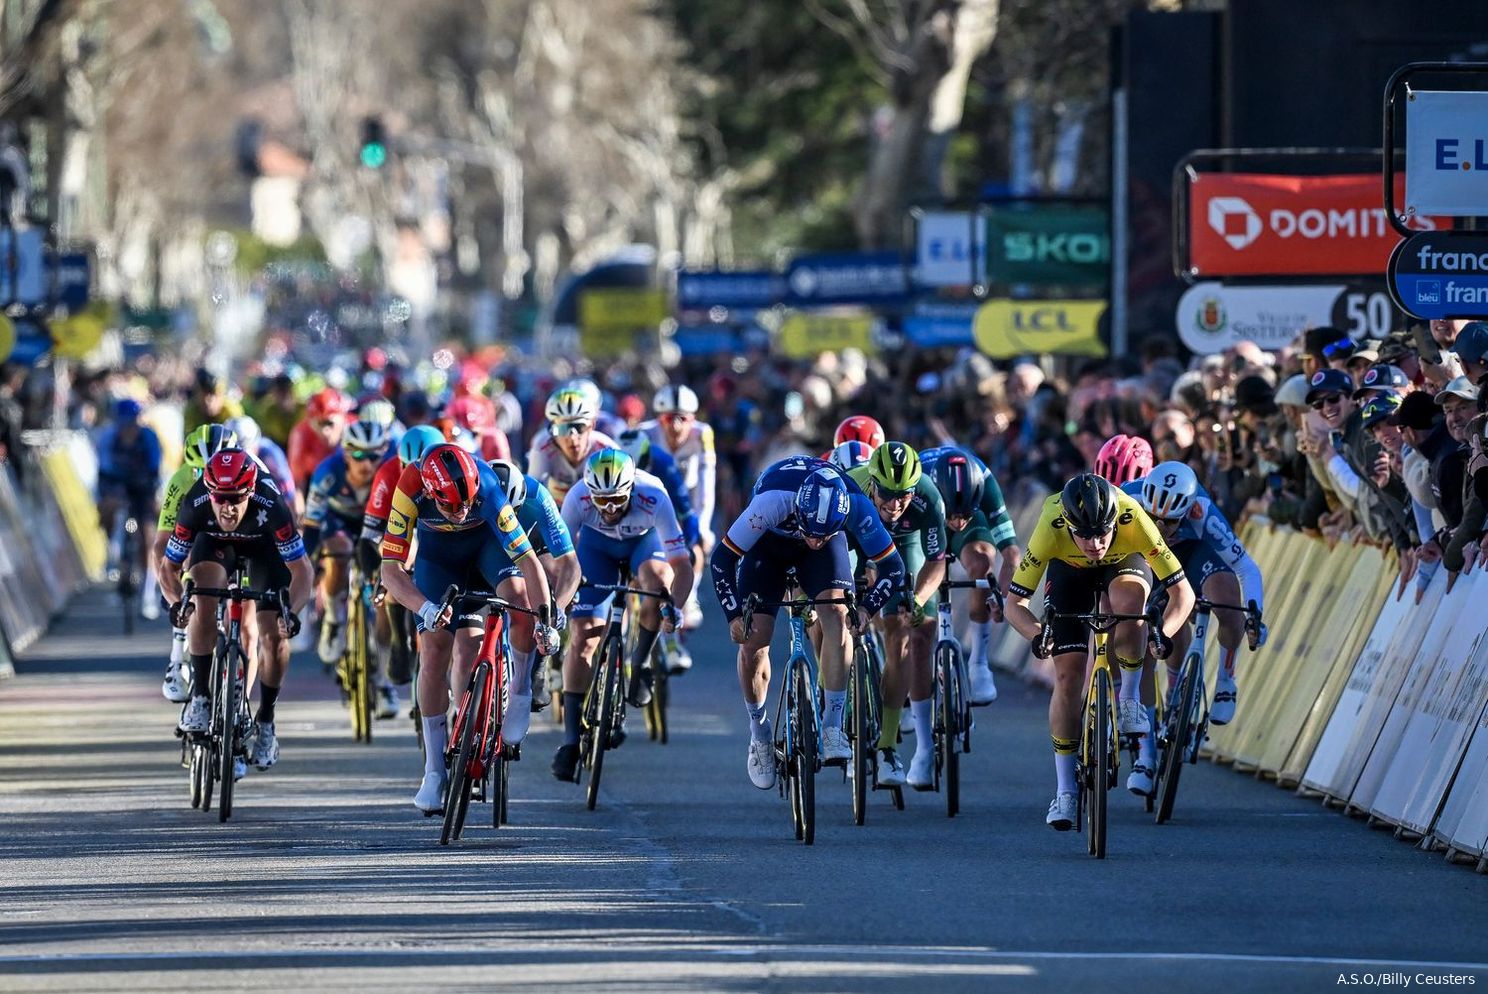 Kooij in Giro zonder vaste lead-out: 'Begrijp keuze voor Van Aert en Affini, maar voor ons wel echt zuur'